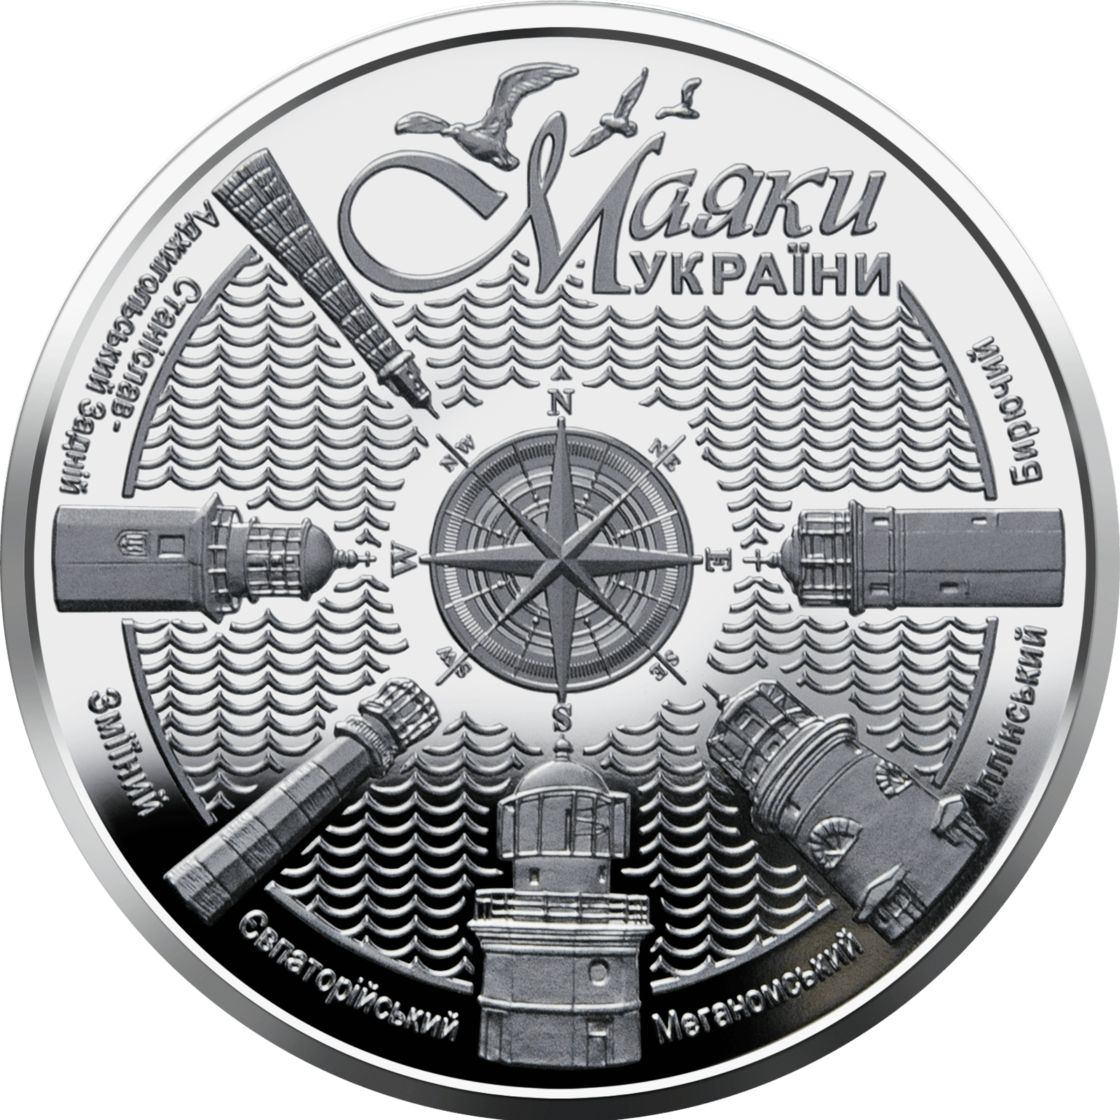 Нацбанк випустив пам’ятну монету з маяками Херсонщини і Криму